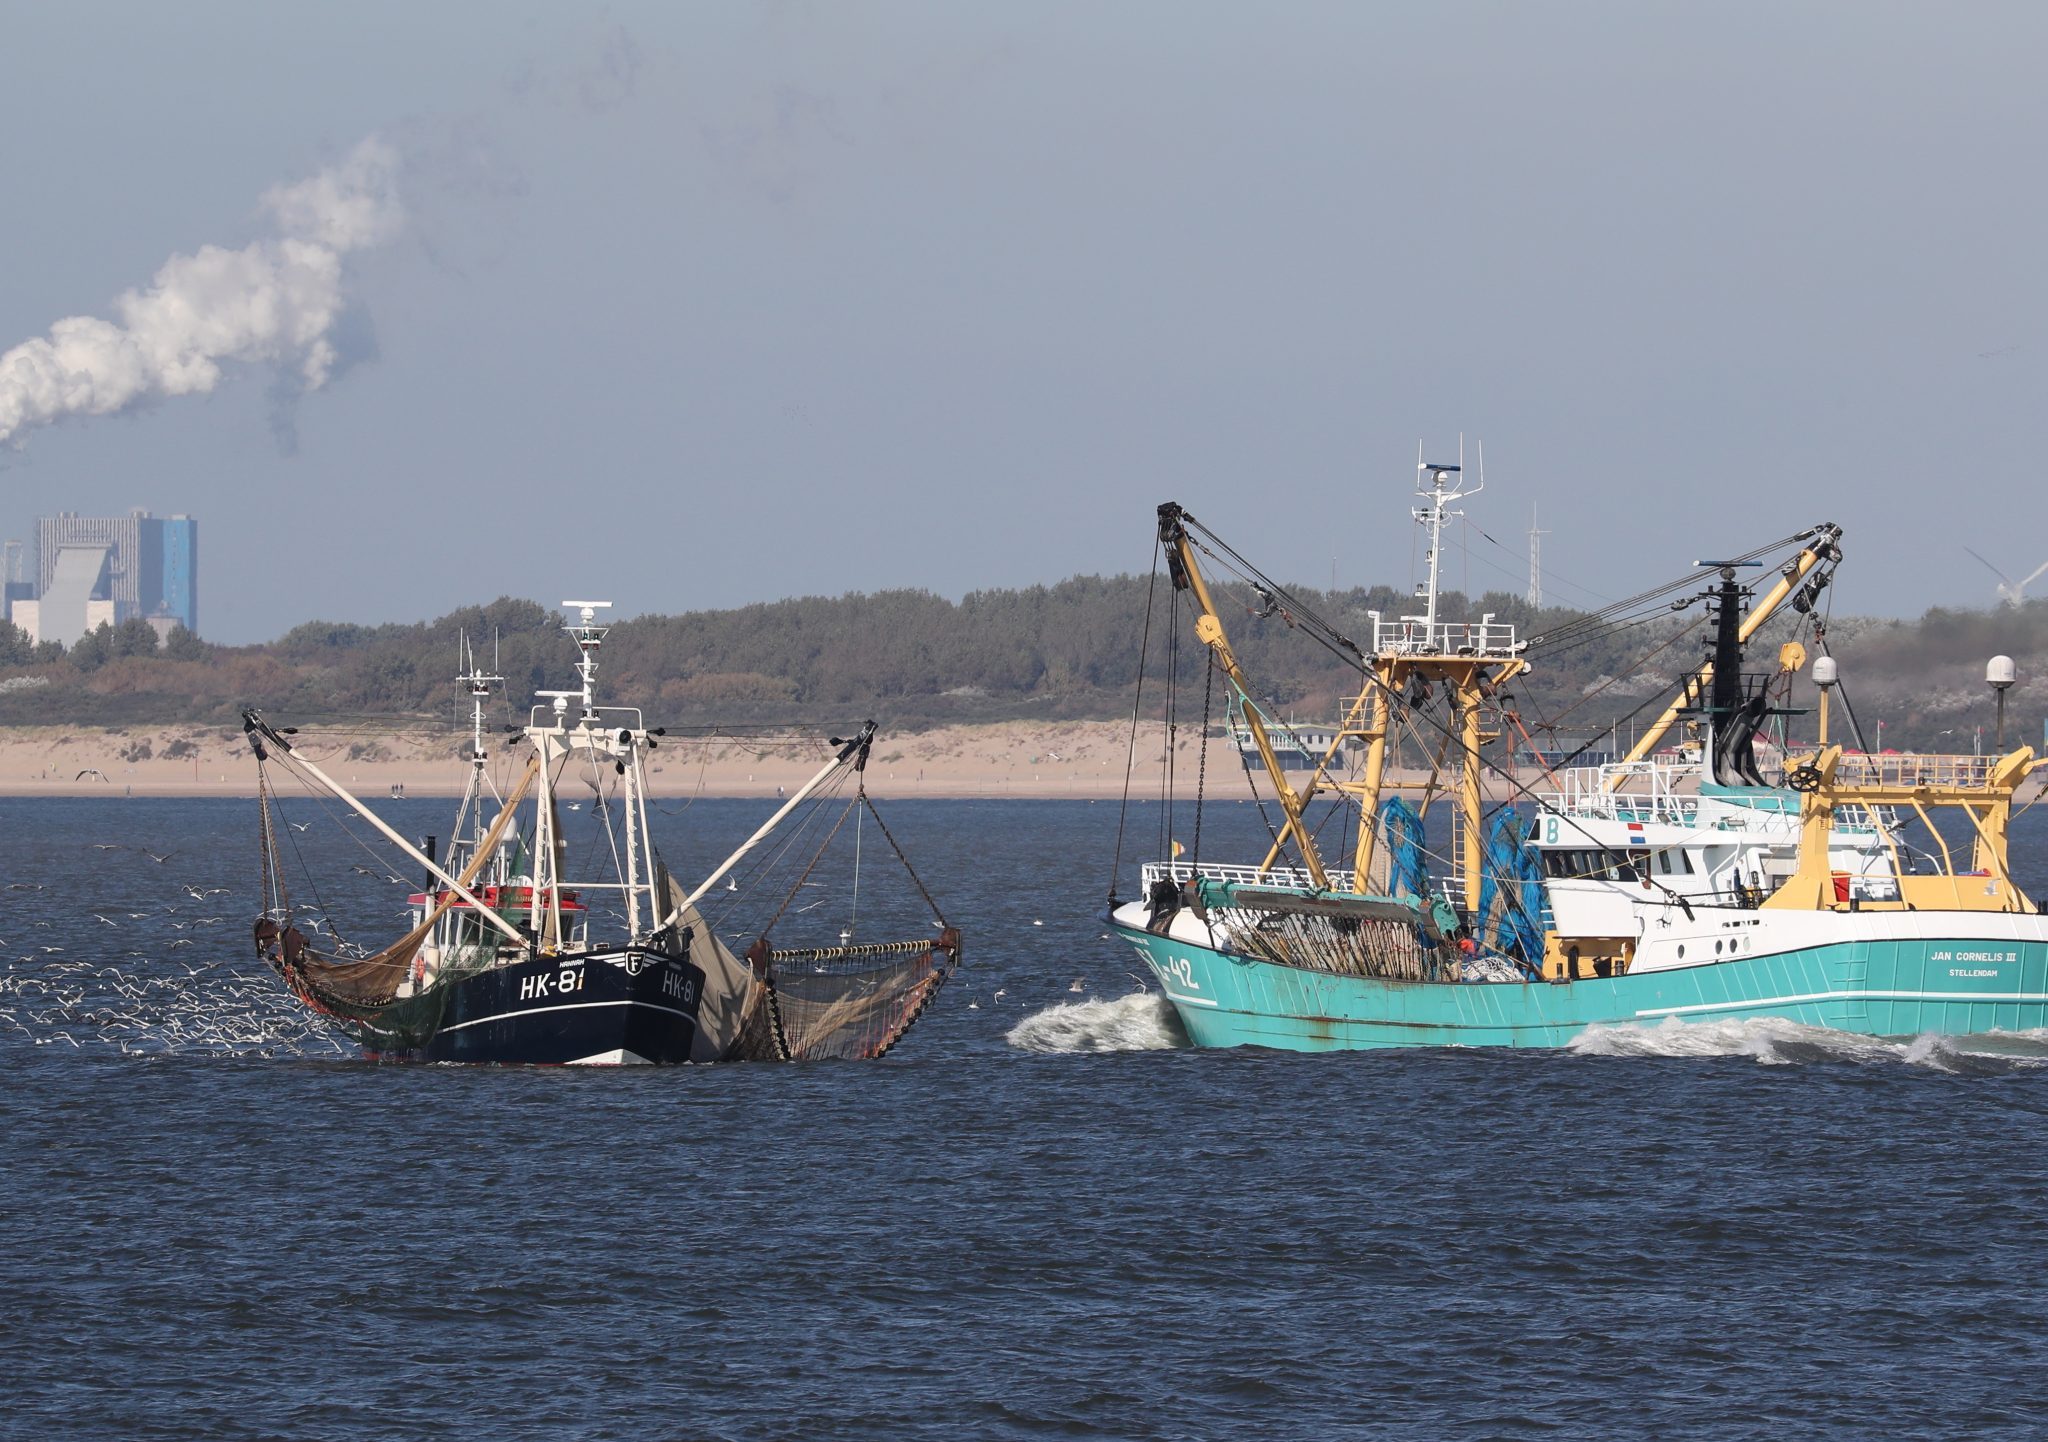 Grote diepstekende viskotters ondervinden steeds meer last van de betrekkelijk smalle en ondiepe vaargeul in het Slijkgat